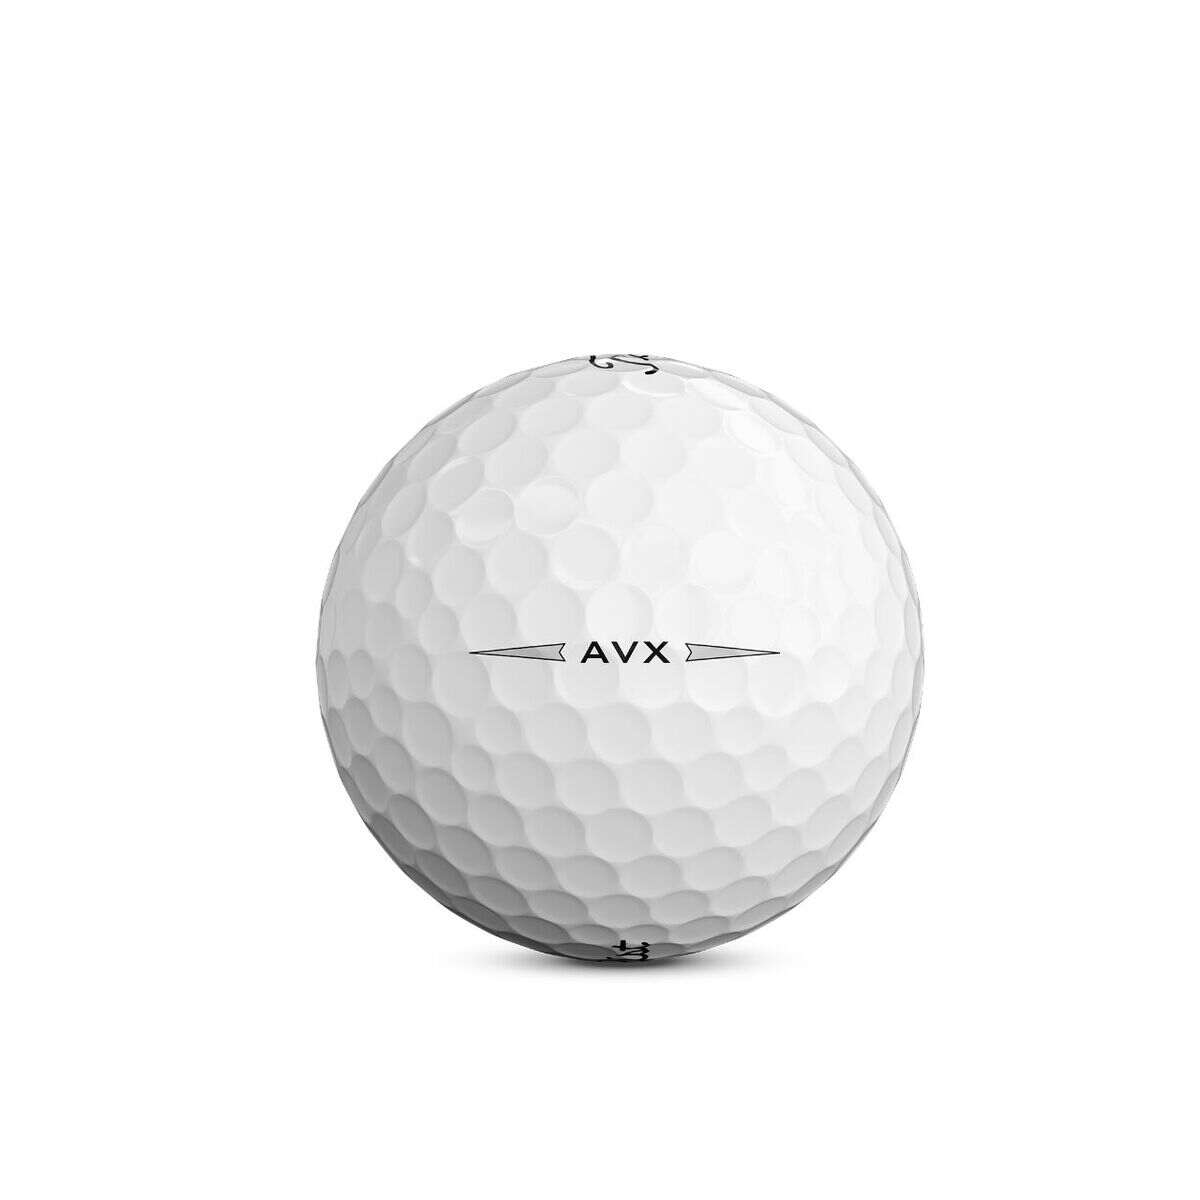 Titleist AVX Golf Balls, White, 12 Pack - image 5 of 6